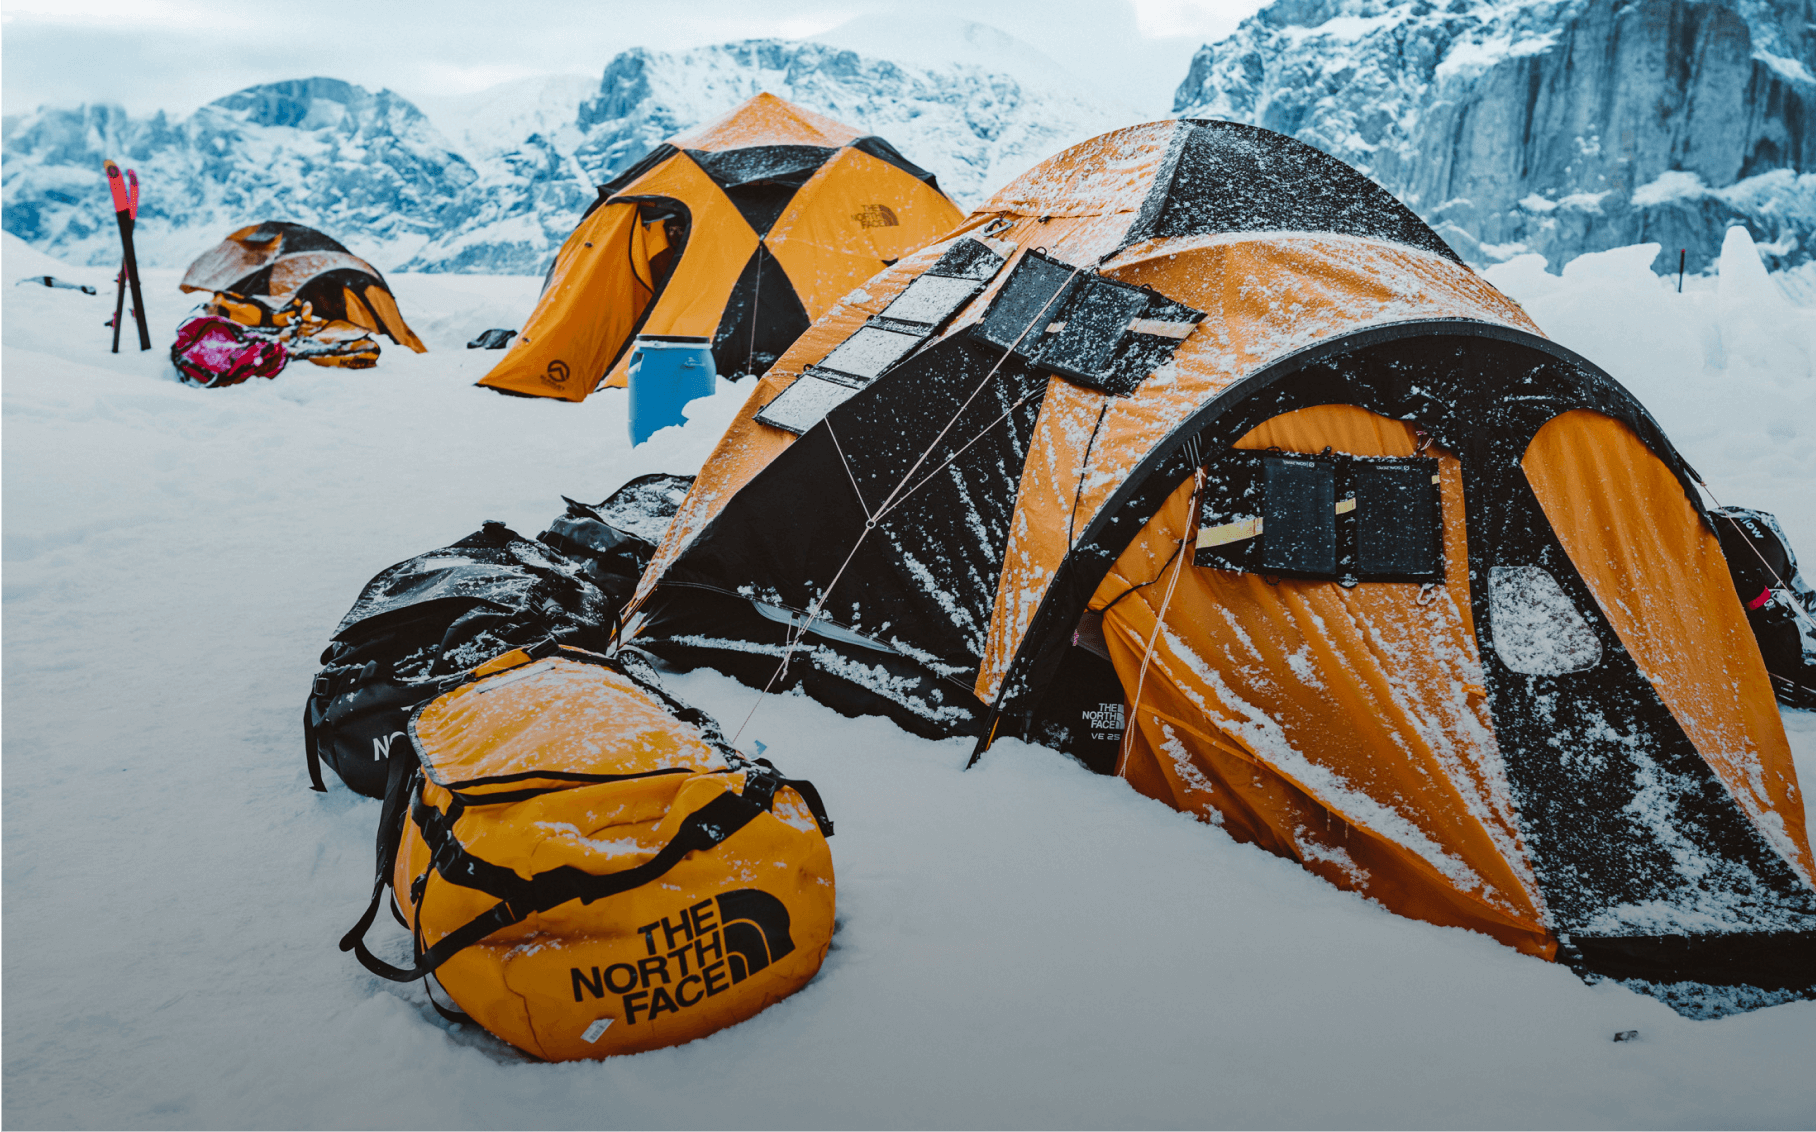 Un camp de base de tentes au pied de sommets enneigés et dentelés. 